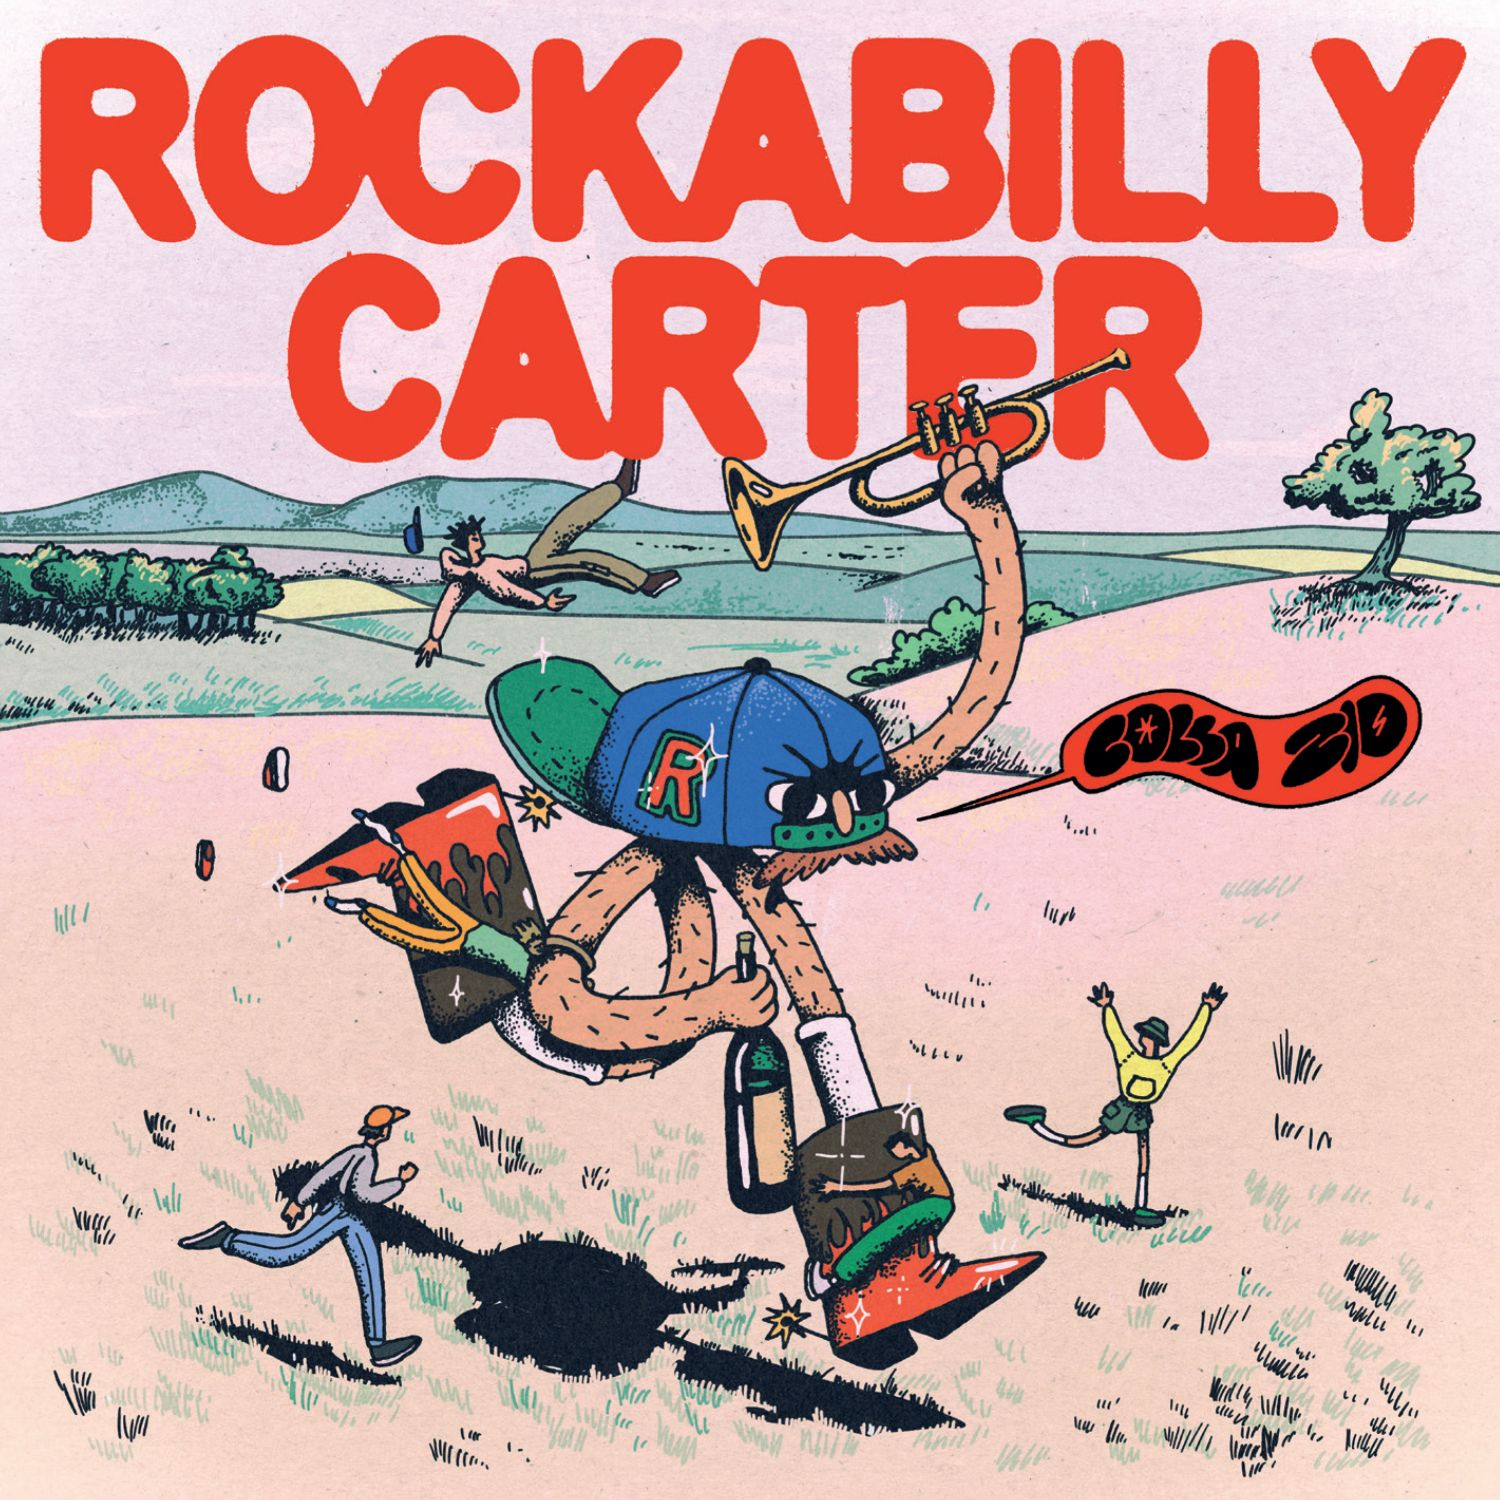 ROCKABILLY CARTER